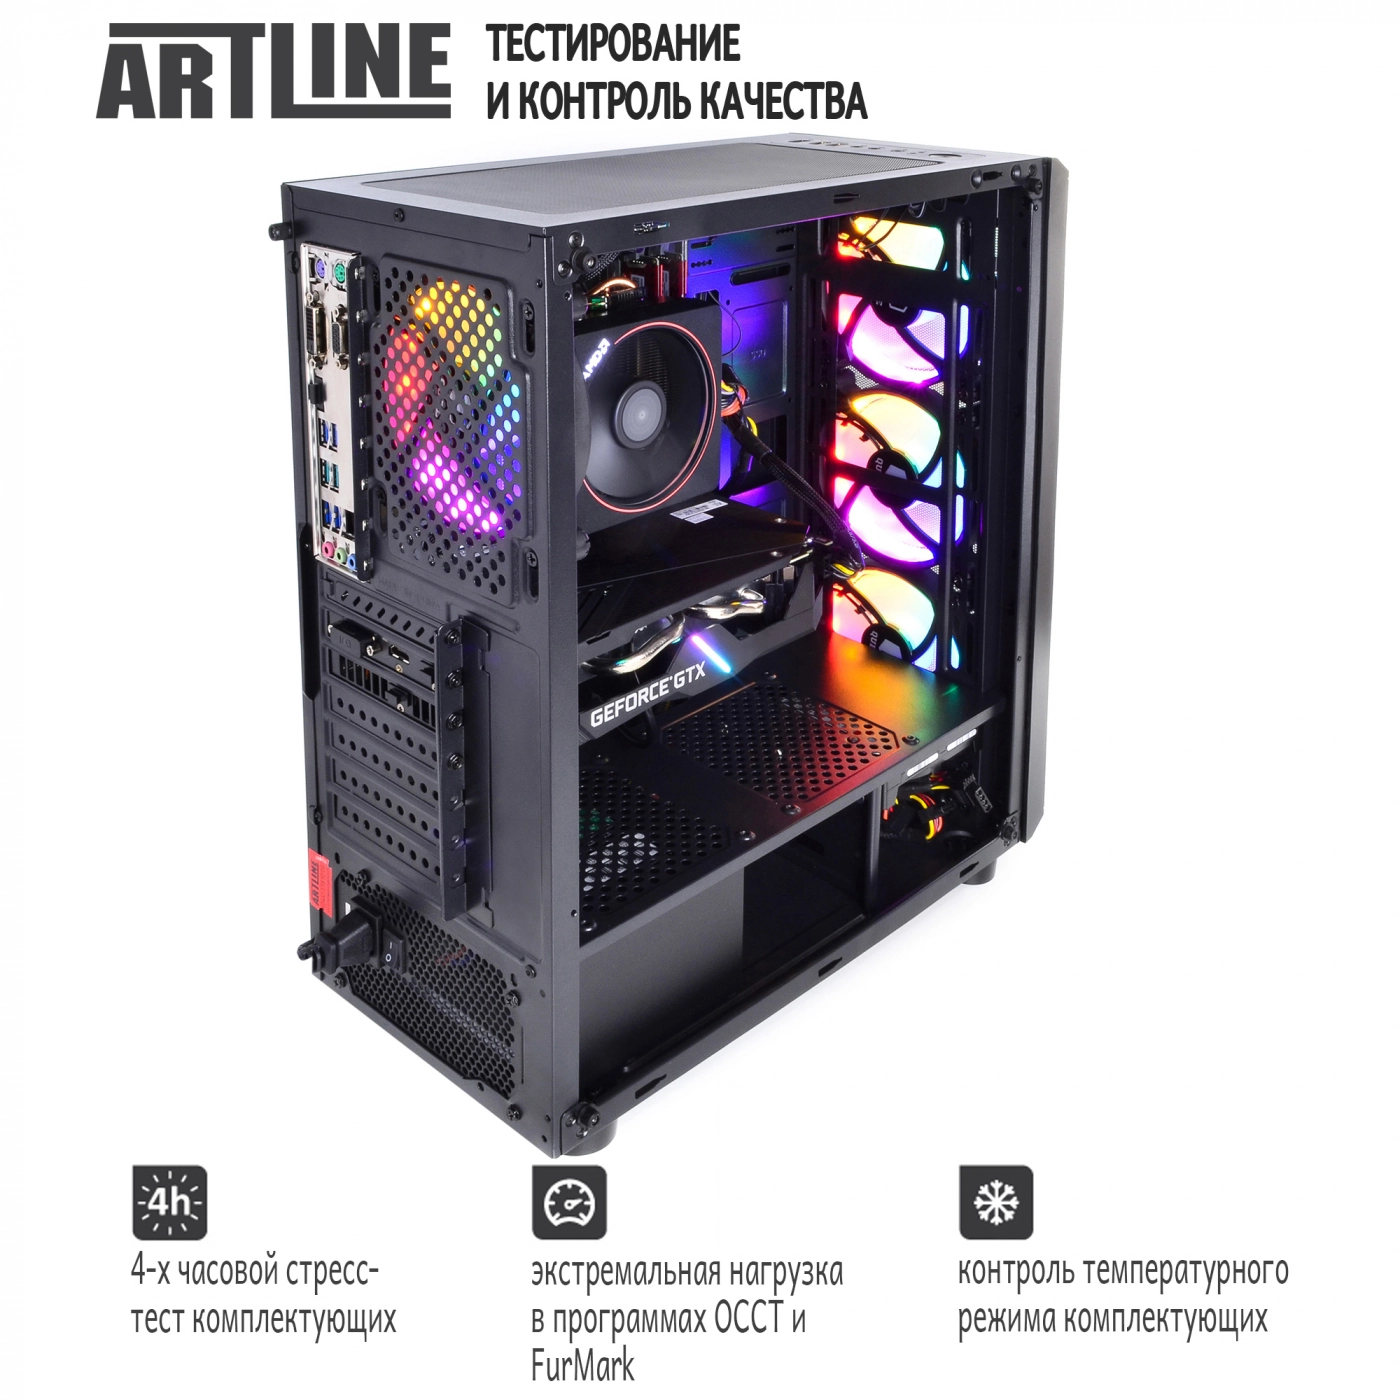 Купить Компьютер ARTLINE Gaming X43v015 - фото 7